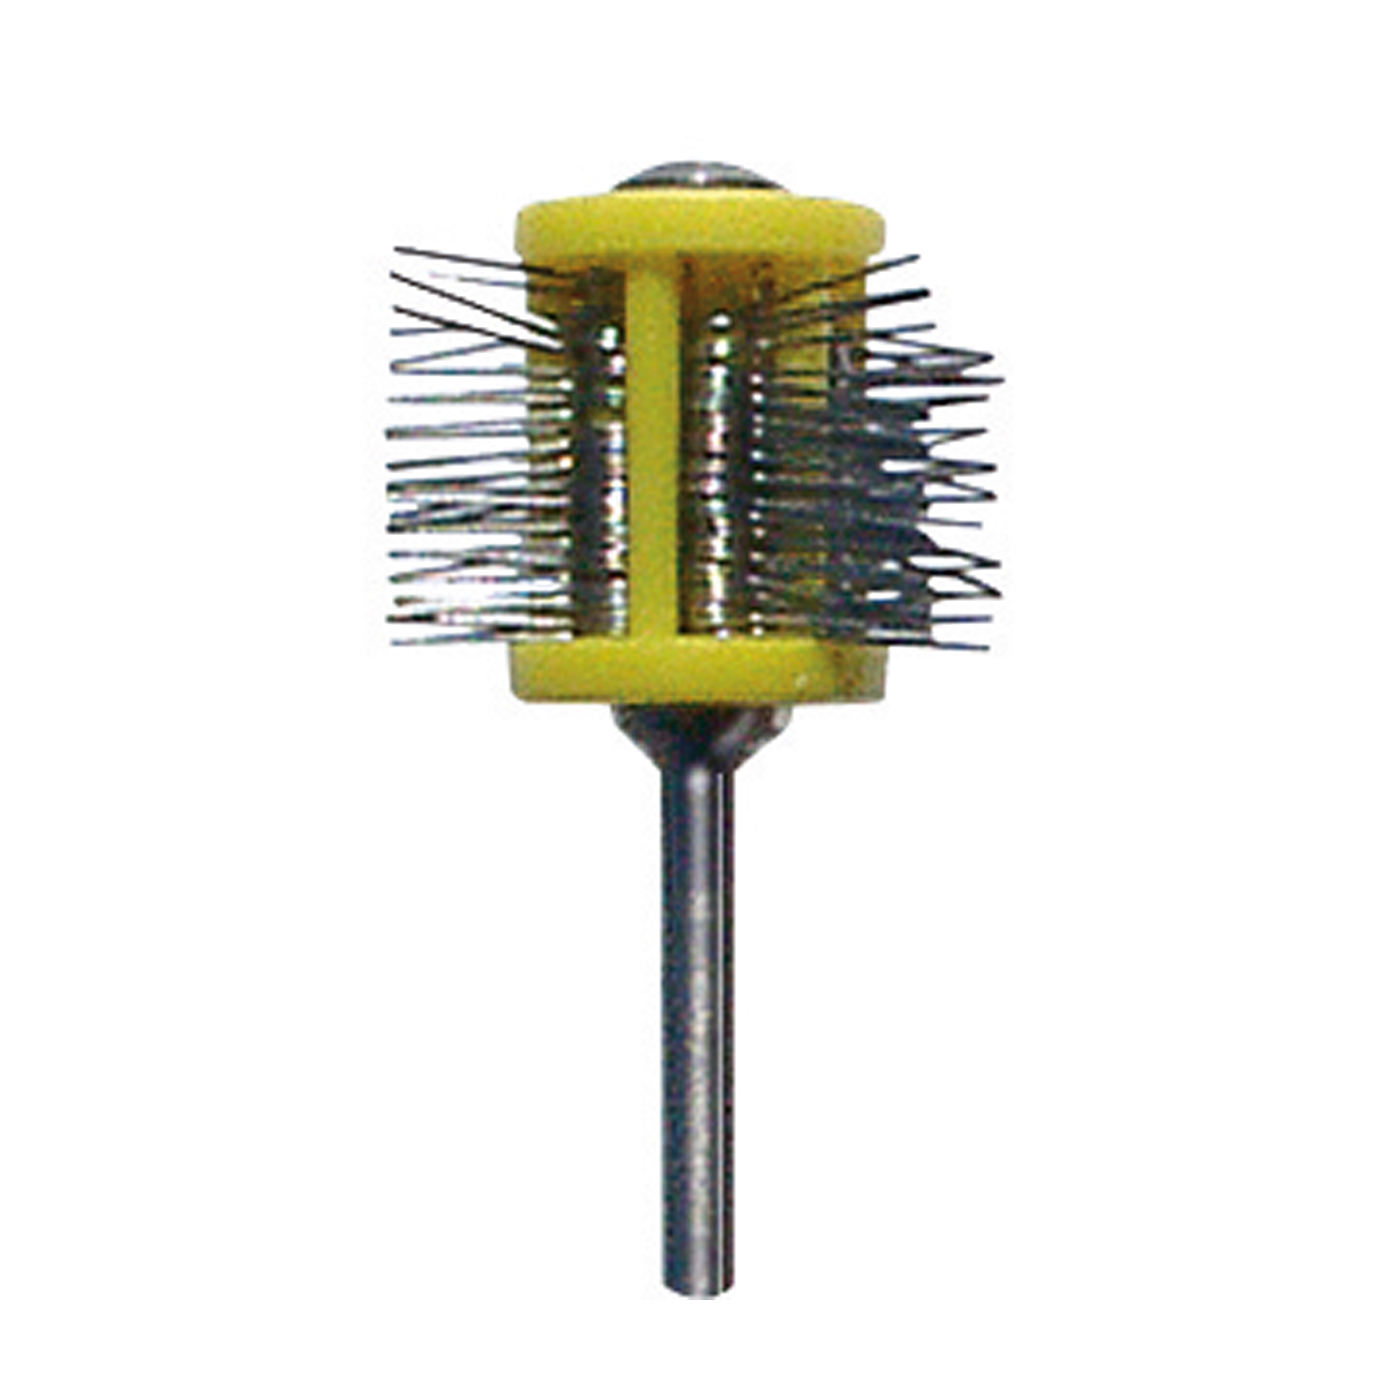 Minimatt Matting Wire Brush, ø 0.20 mm, Yellow, Short Wires - 1 piece